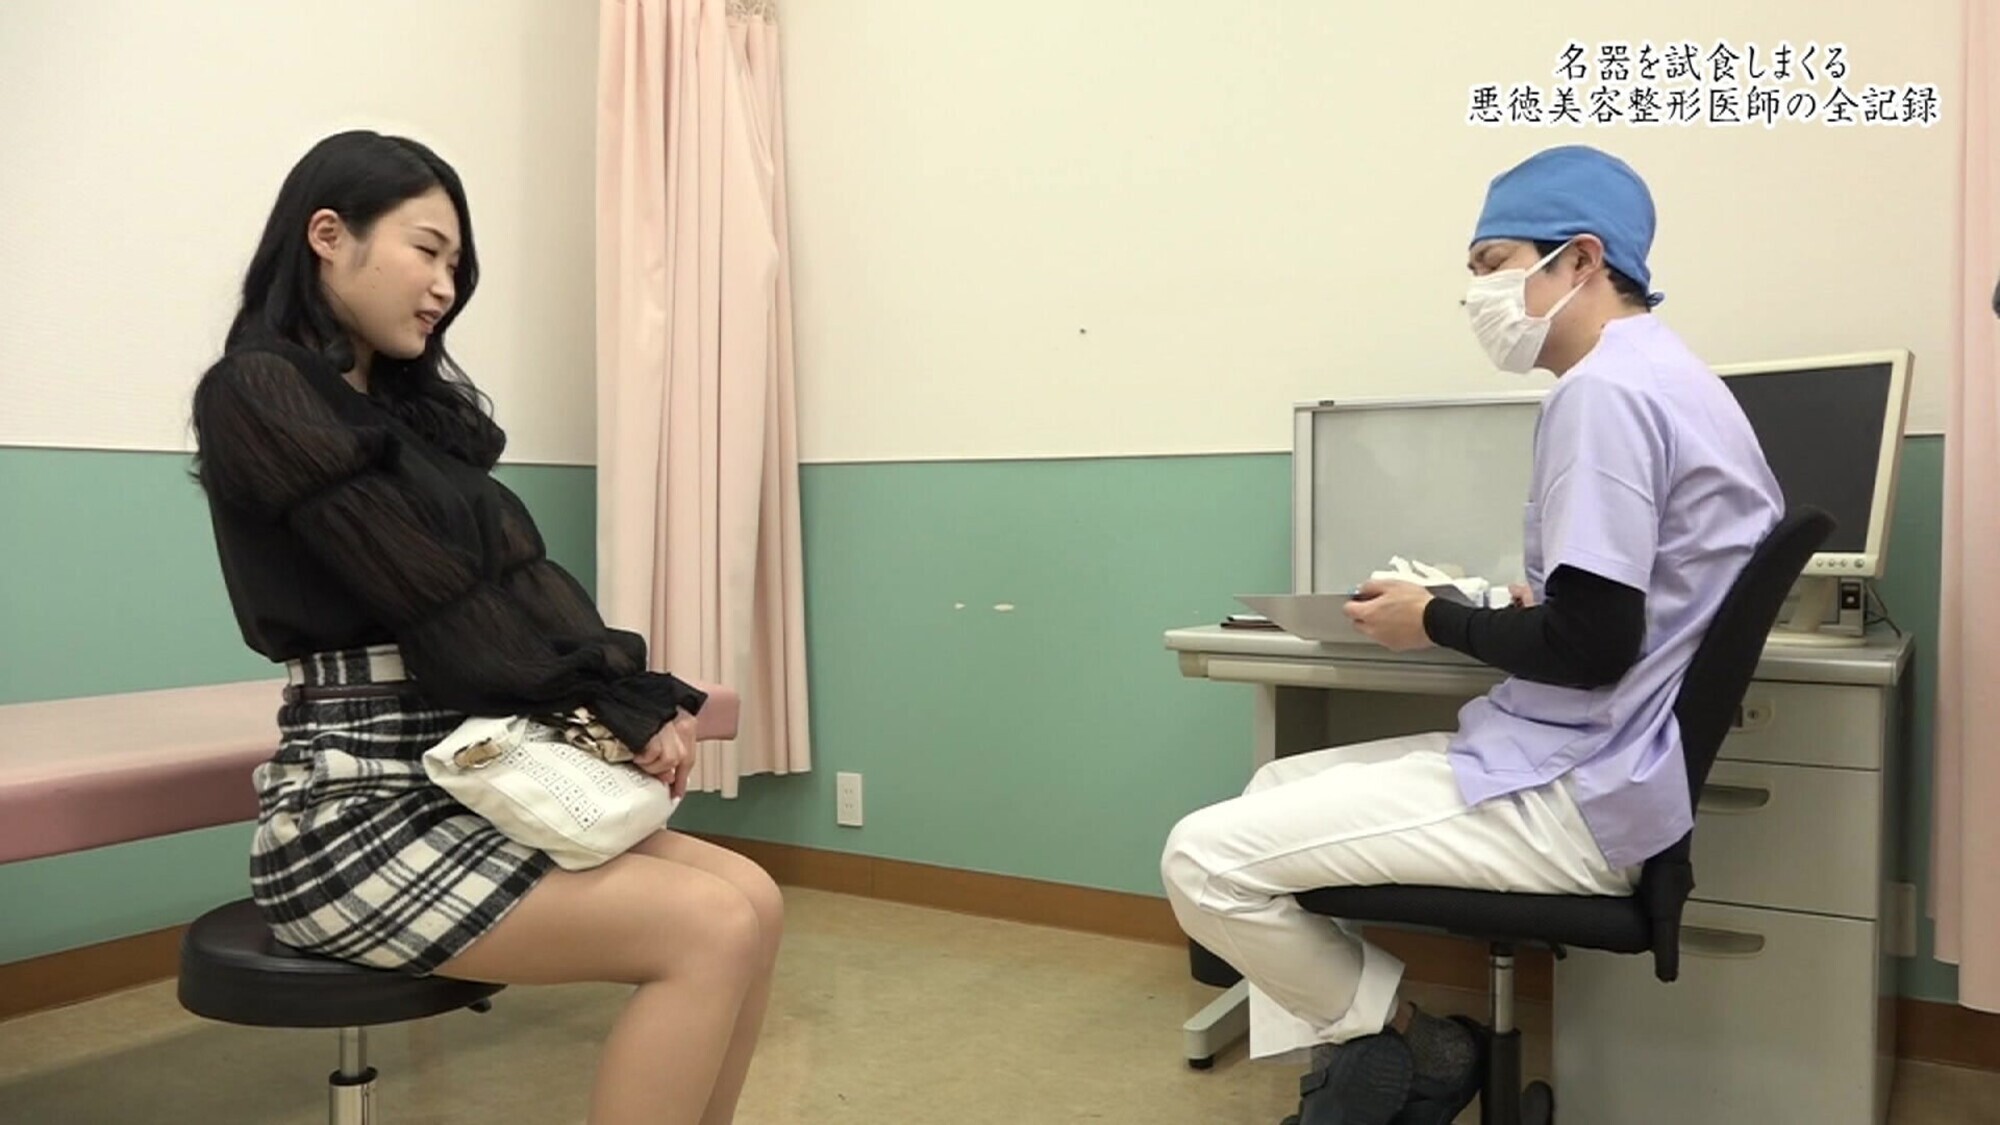 【エロ動画】膣内ヒアルロン酸注射で締まりが良くなった患者のマ●コを試食しまくる美容整形医師